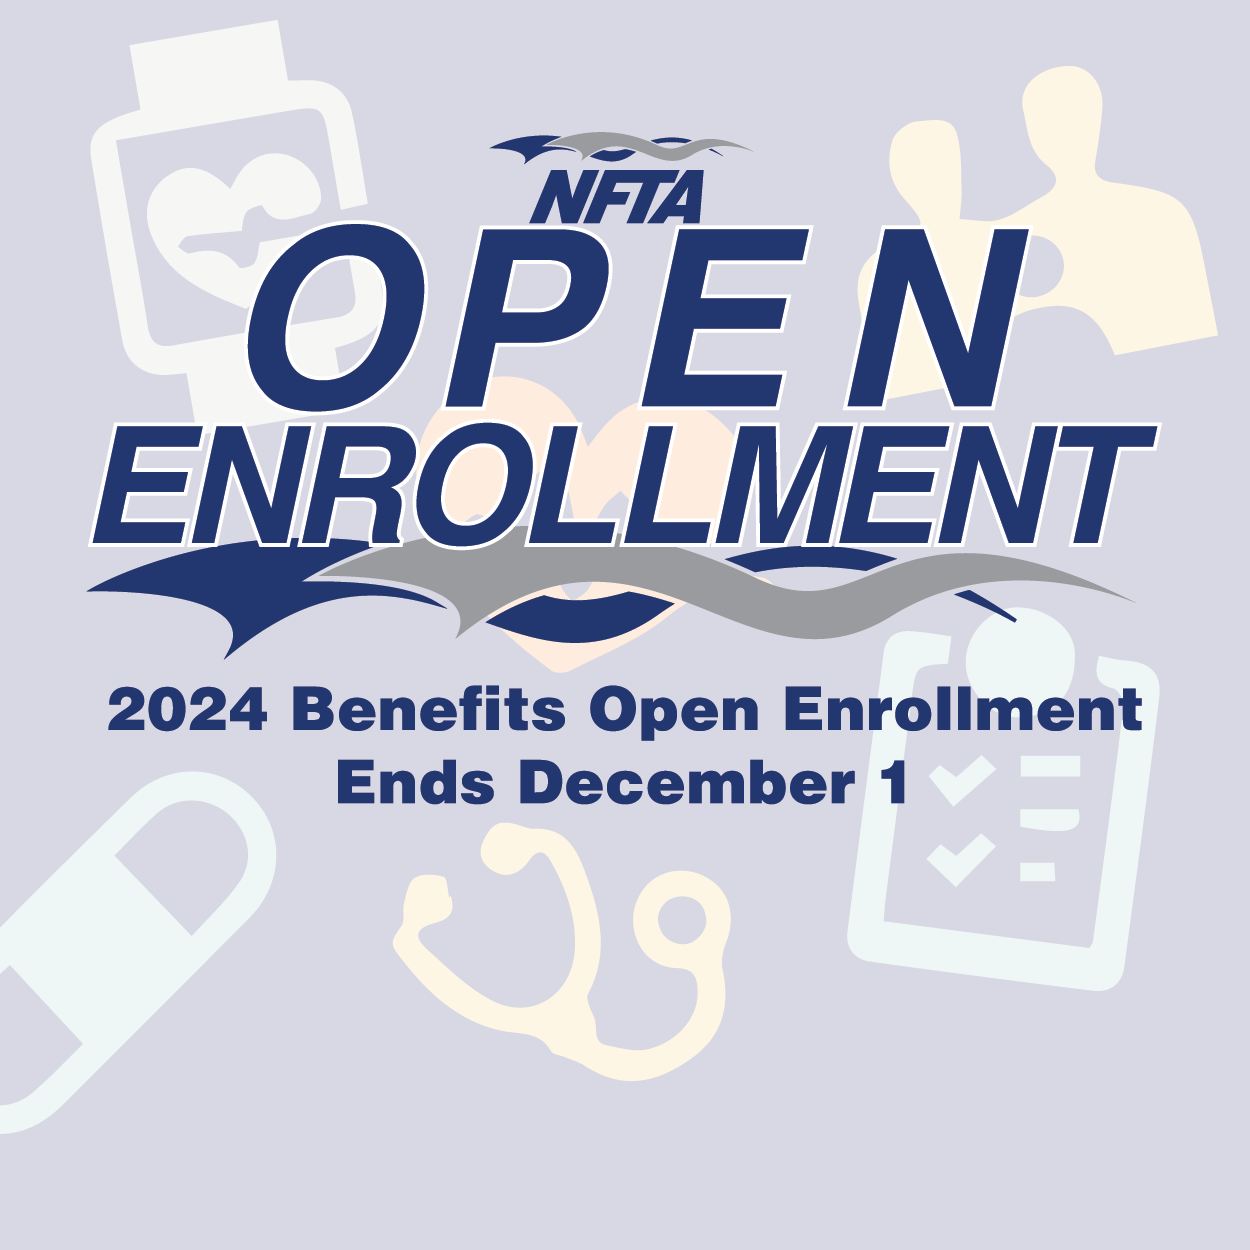 2024 Benefits Open Enrollment Runs Through Dec. 1 NFTA Elements